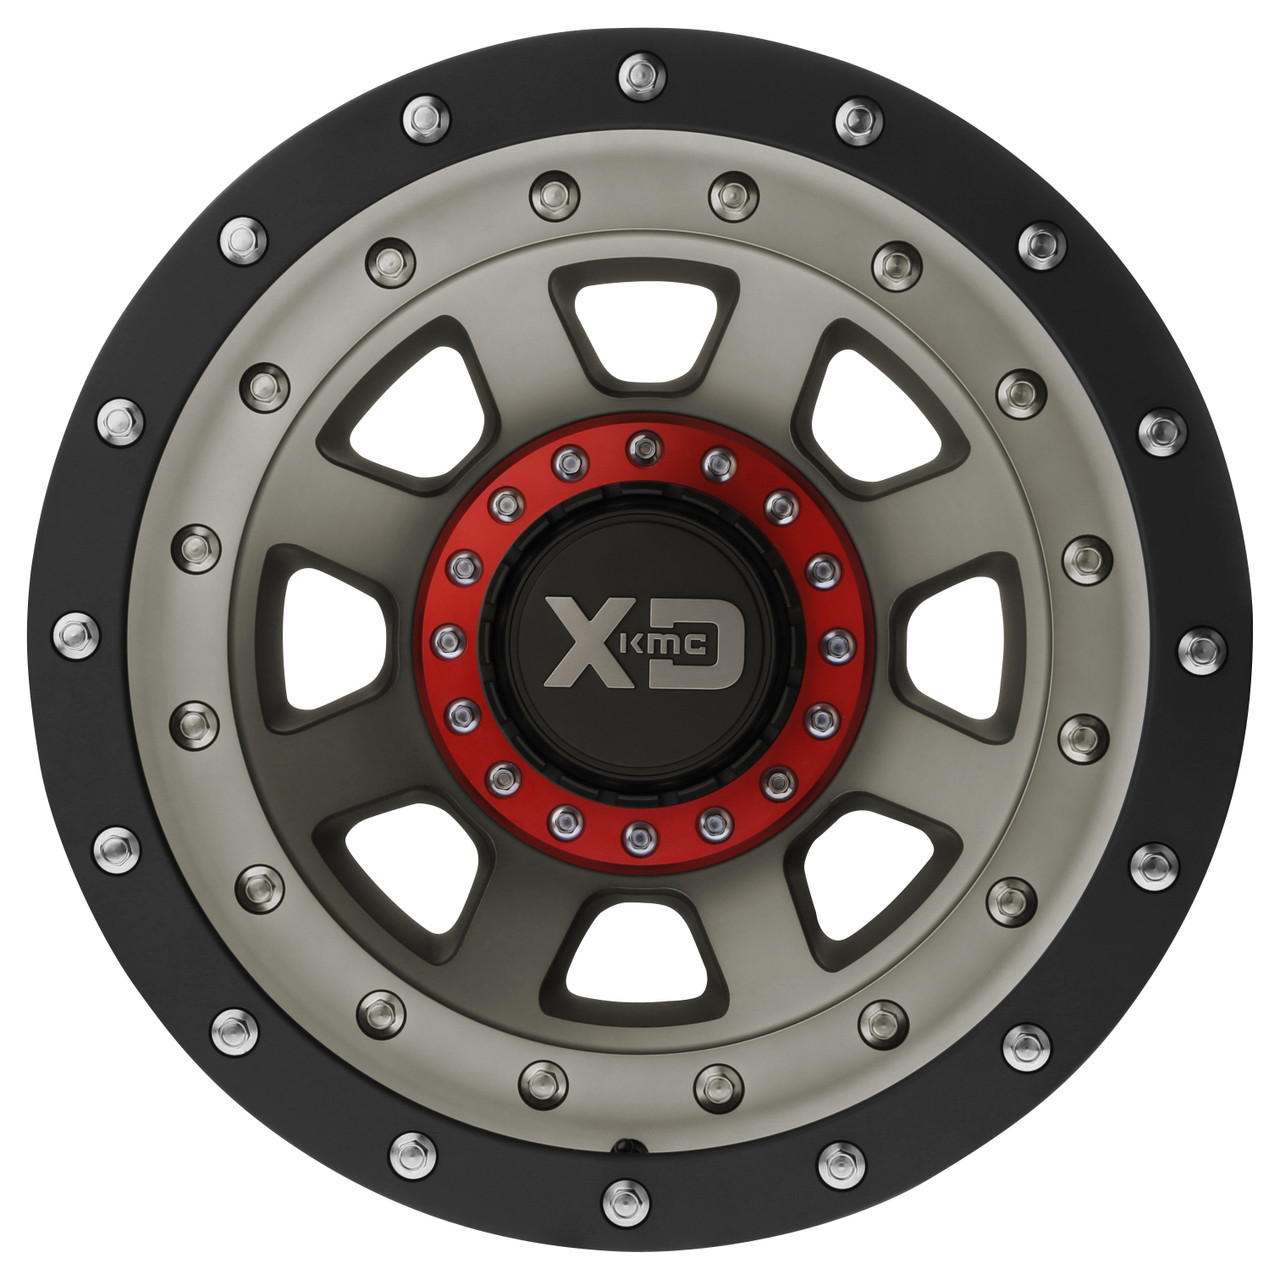 XD XD137 Fmj 20x10 5x5.5 5x150 Satin Black Dark Tint Wheel 20" -18mm Rim